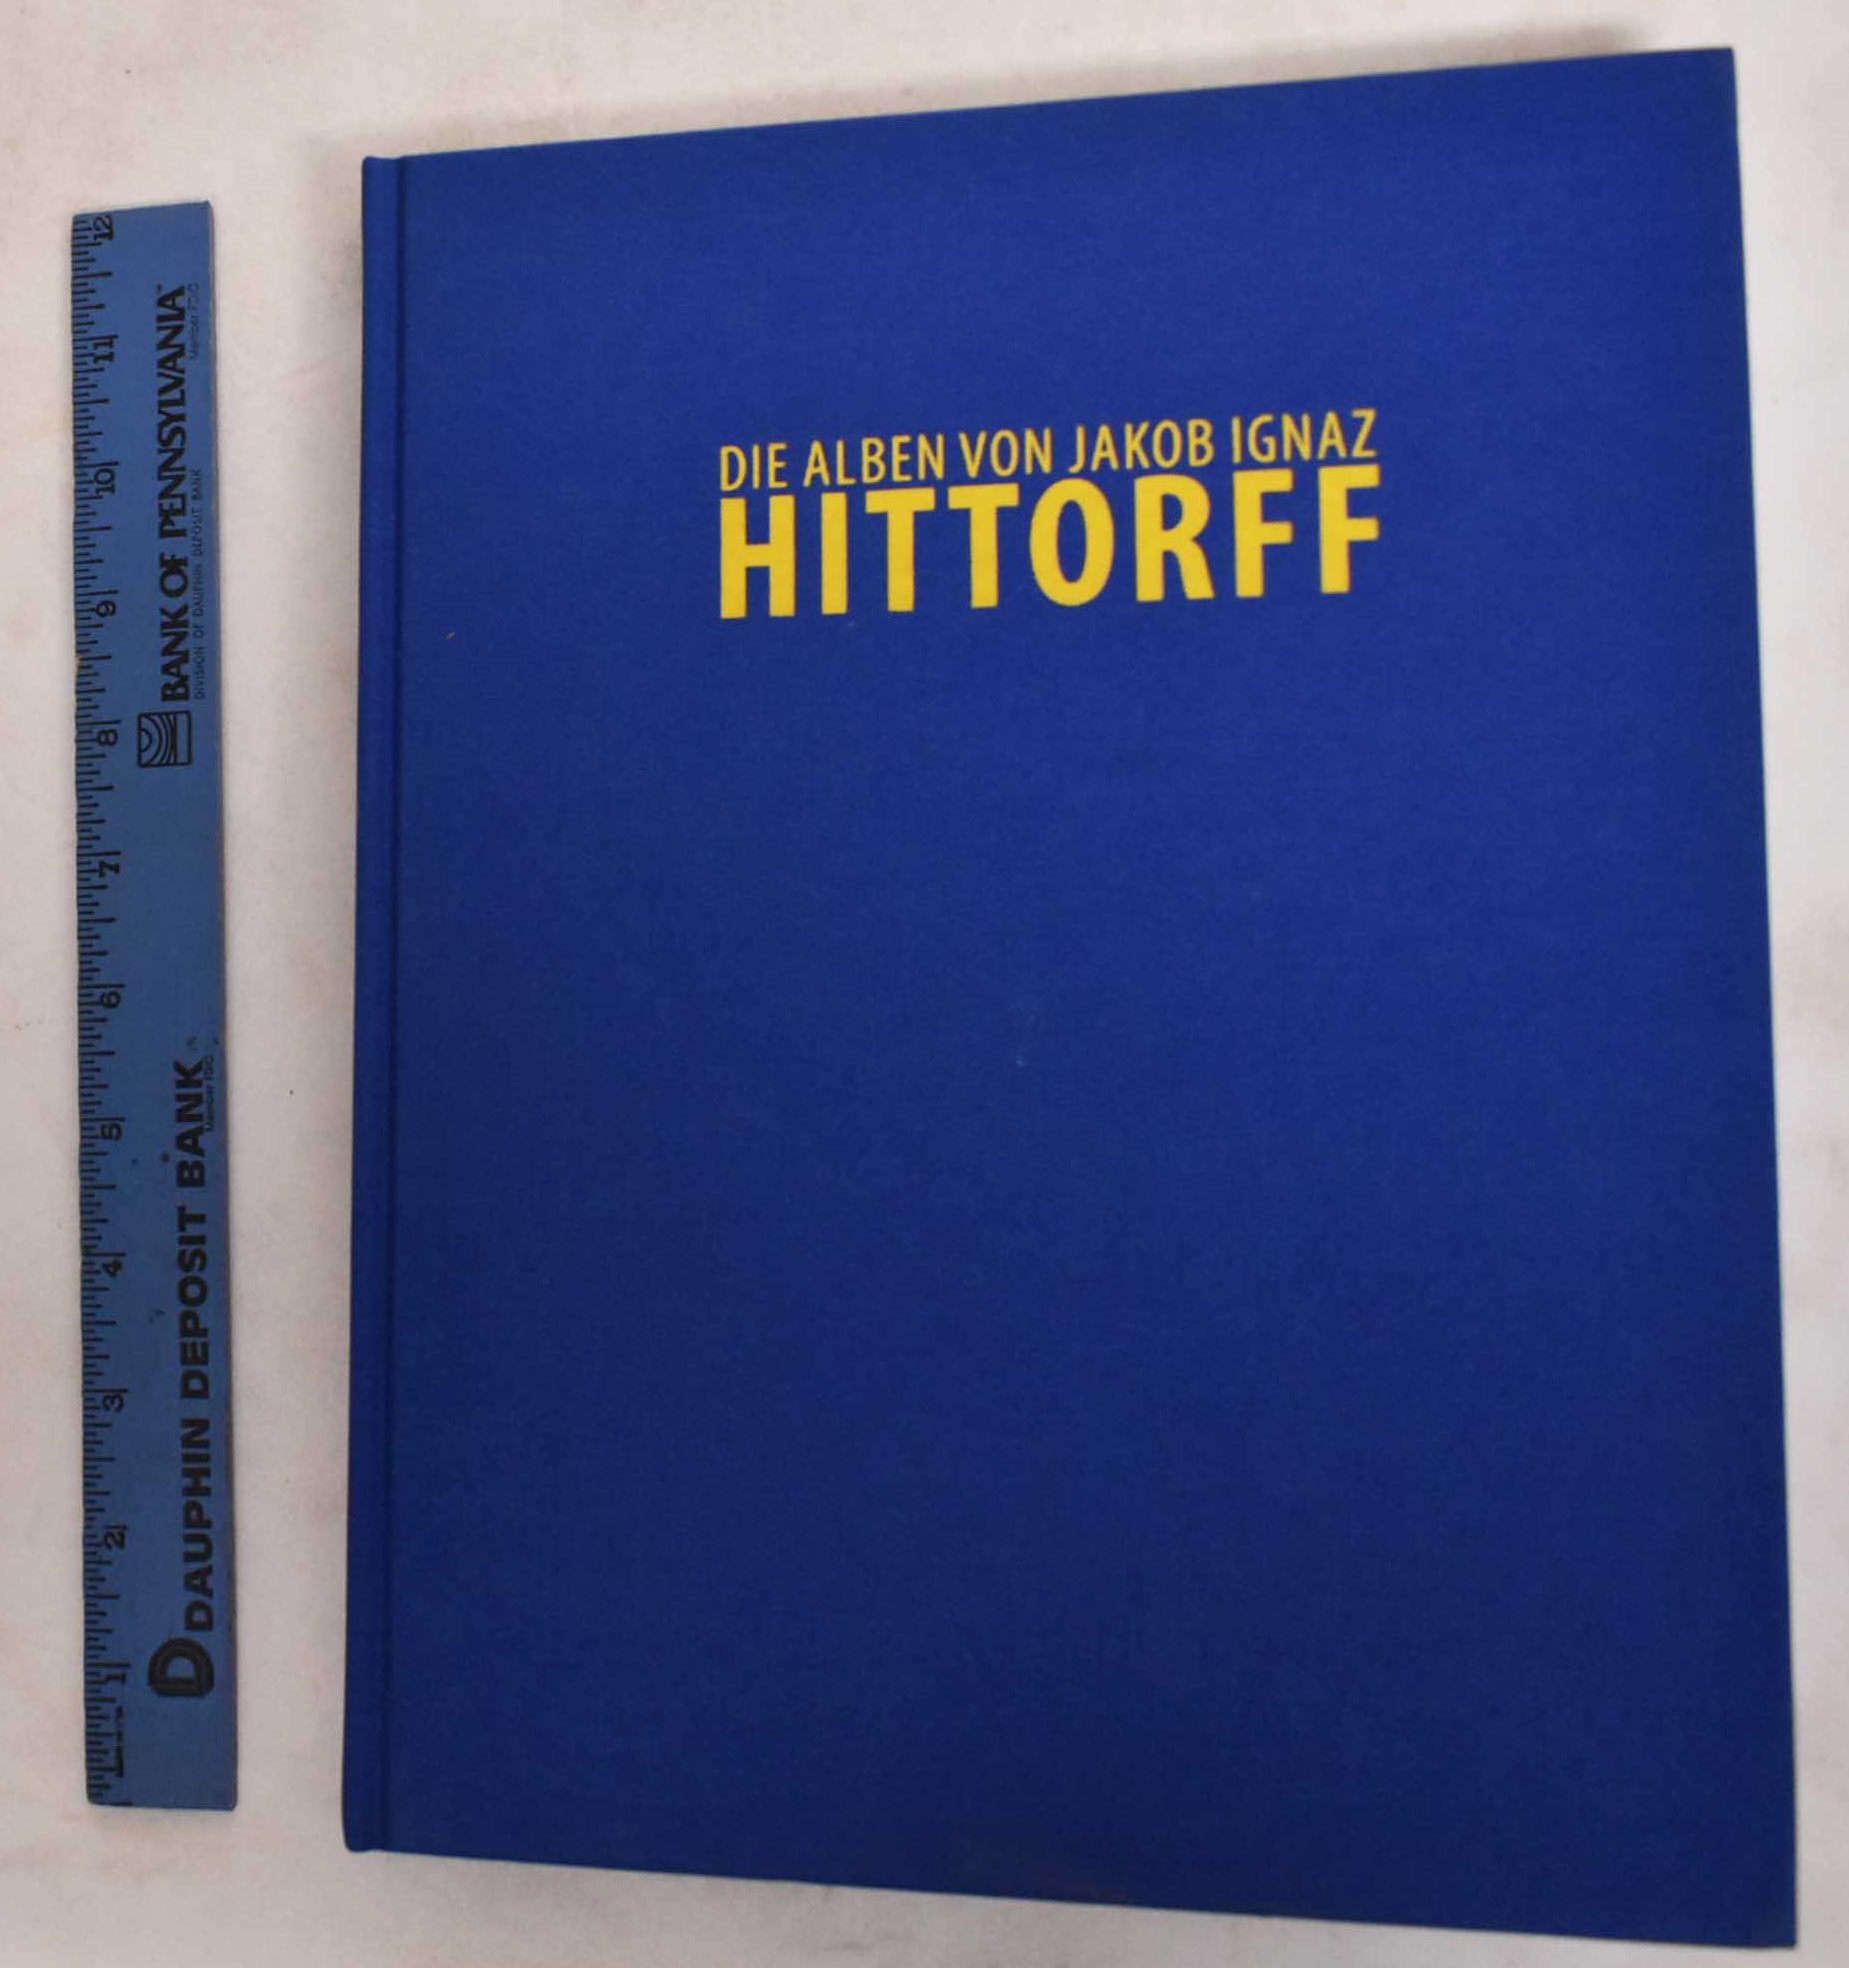 Hommage Fur Hittorff, 1792-1867: Bilder, Bucher Und Wurdigungen (Volume VI) - Hittorff, Jaques Ignace; Christiane Hoffrath; Michael Kiene